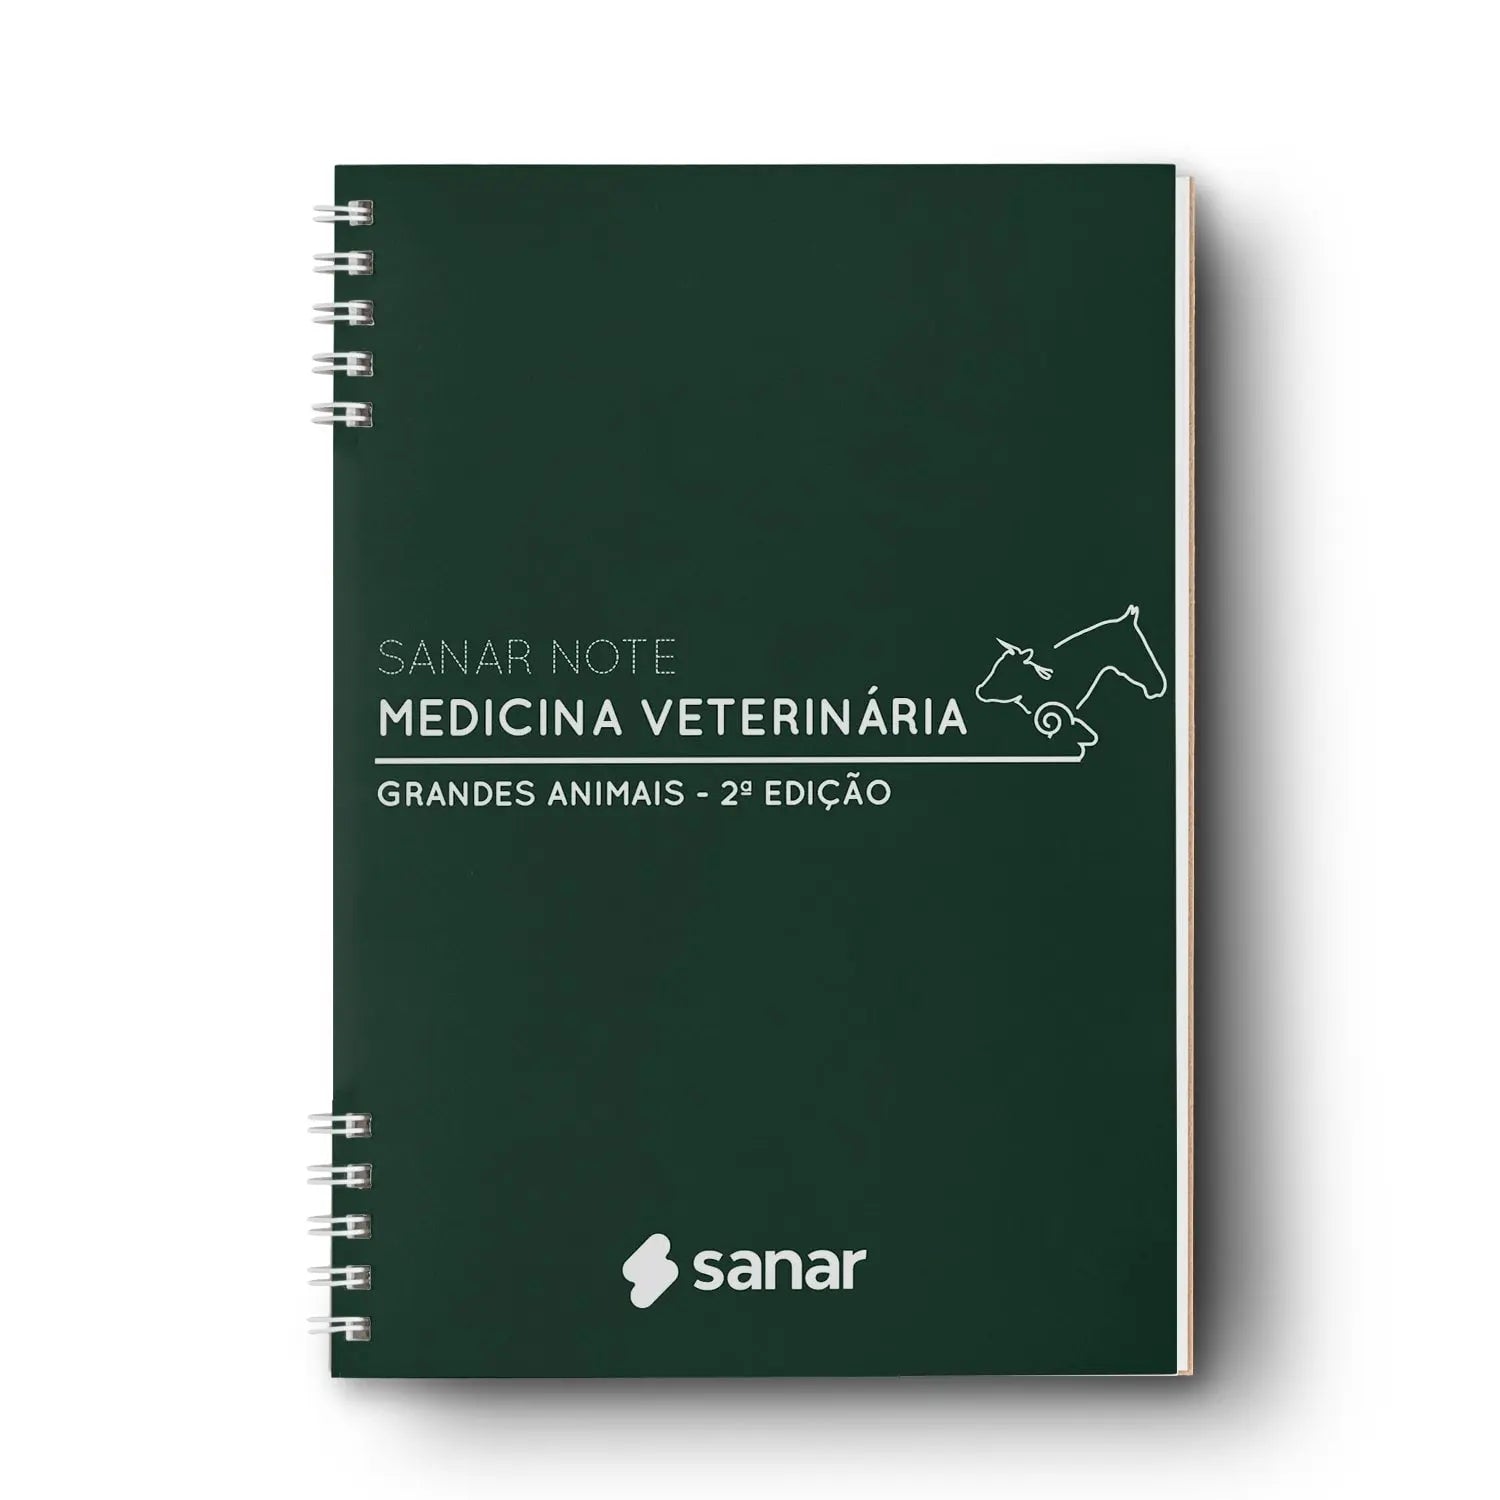 Imagem do livro Sanar Note Medicina Veterinária Grandes Animais 2ª Edição